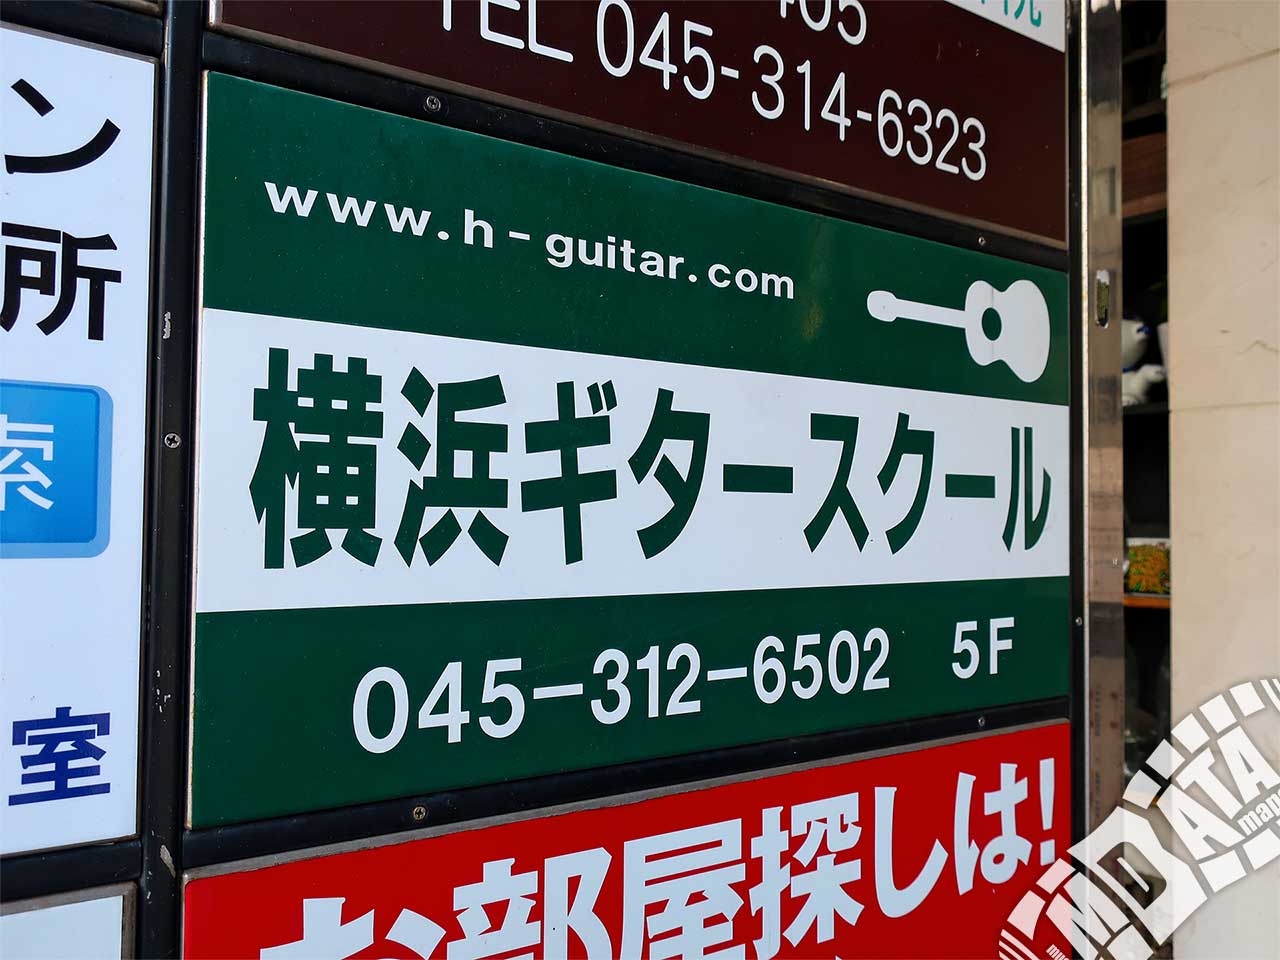 横浜ギタースクール YGSの写真 撮影日:2018/10/24 Photo taken on 2018/10/24